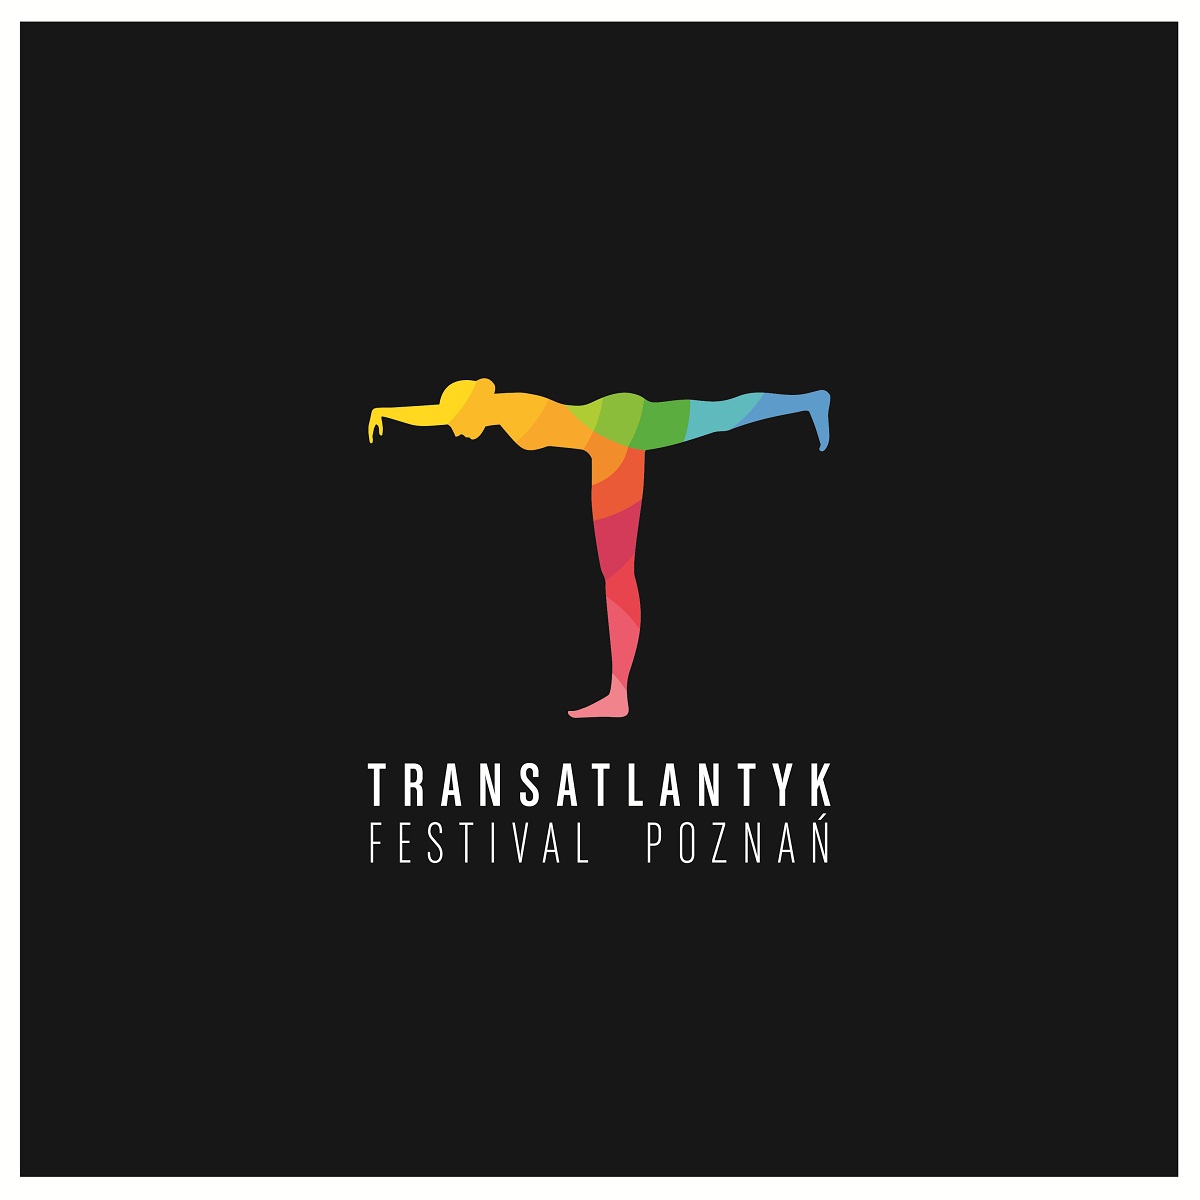 Transatlantyk Festival Poznań (źródło: mat. prasowe)